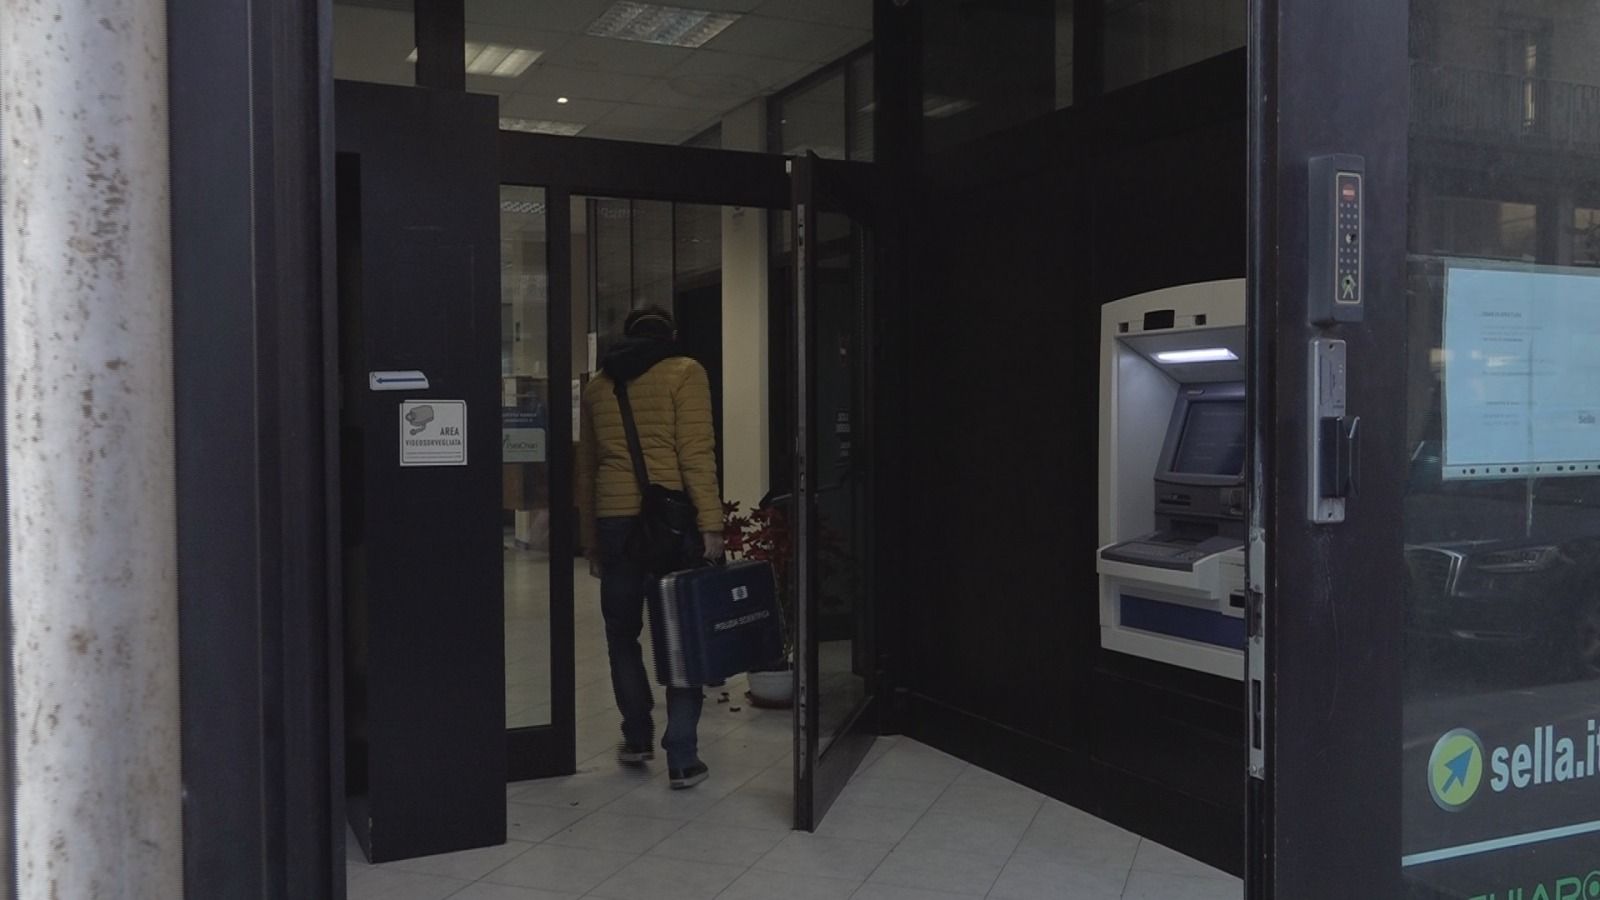 Avellino| Rapina in banca con ostaggi, oltre 32mila euro il bottino. Polizia sulle tracce dei 2 banditi